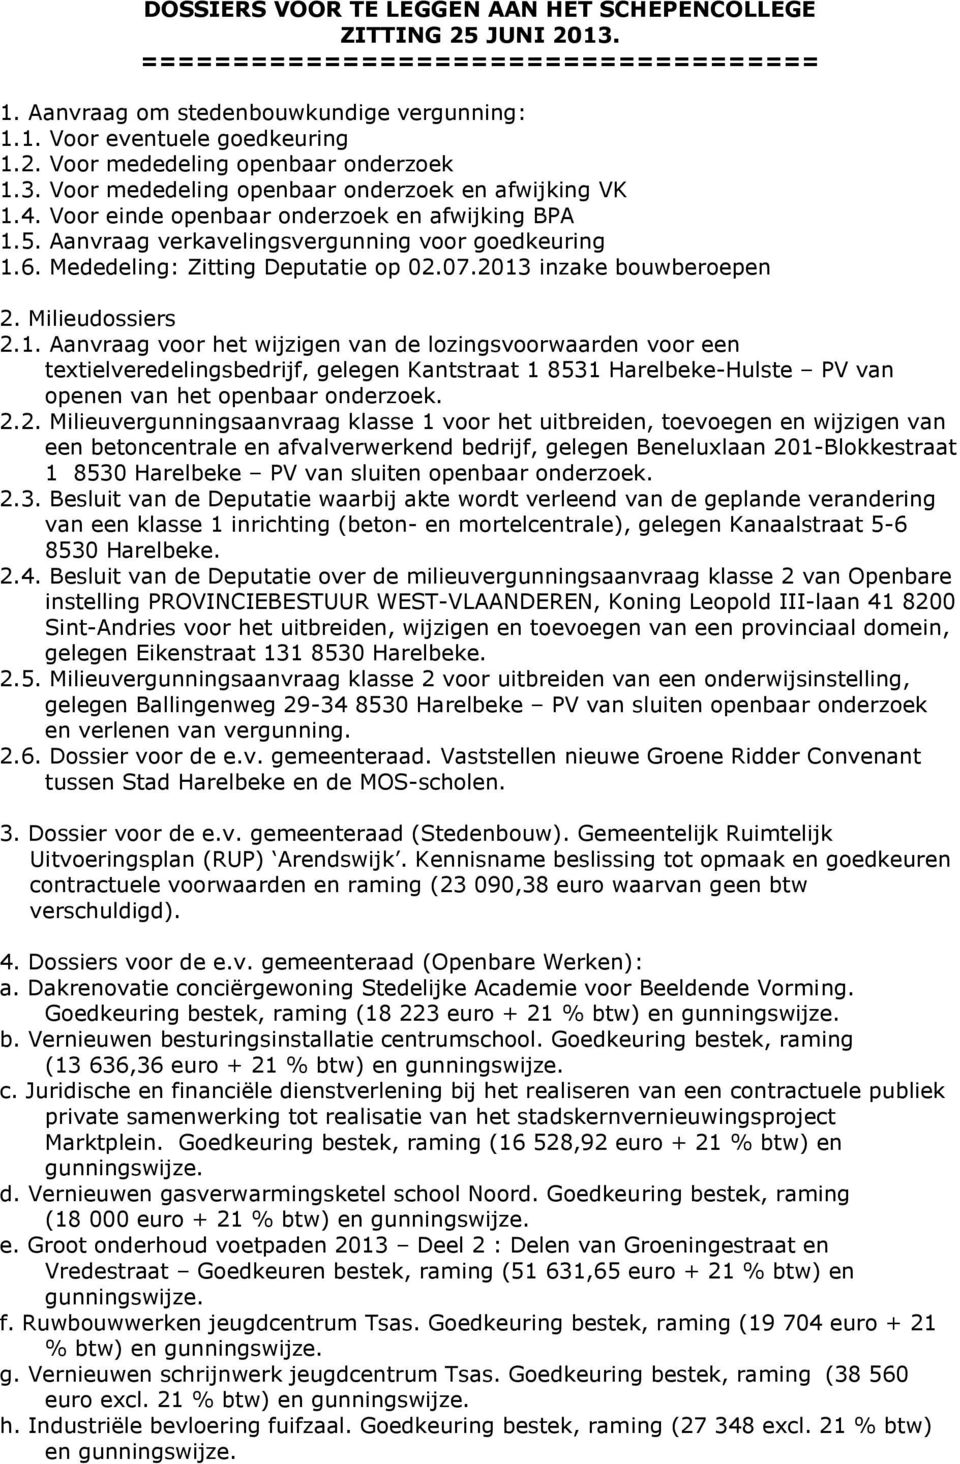 Mededeling: Zitting Deputatie op 02.07.2013